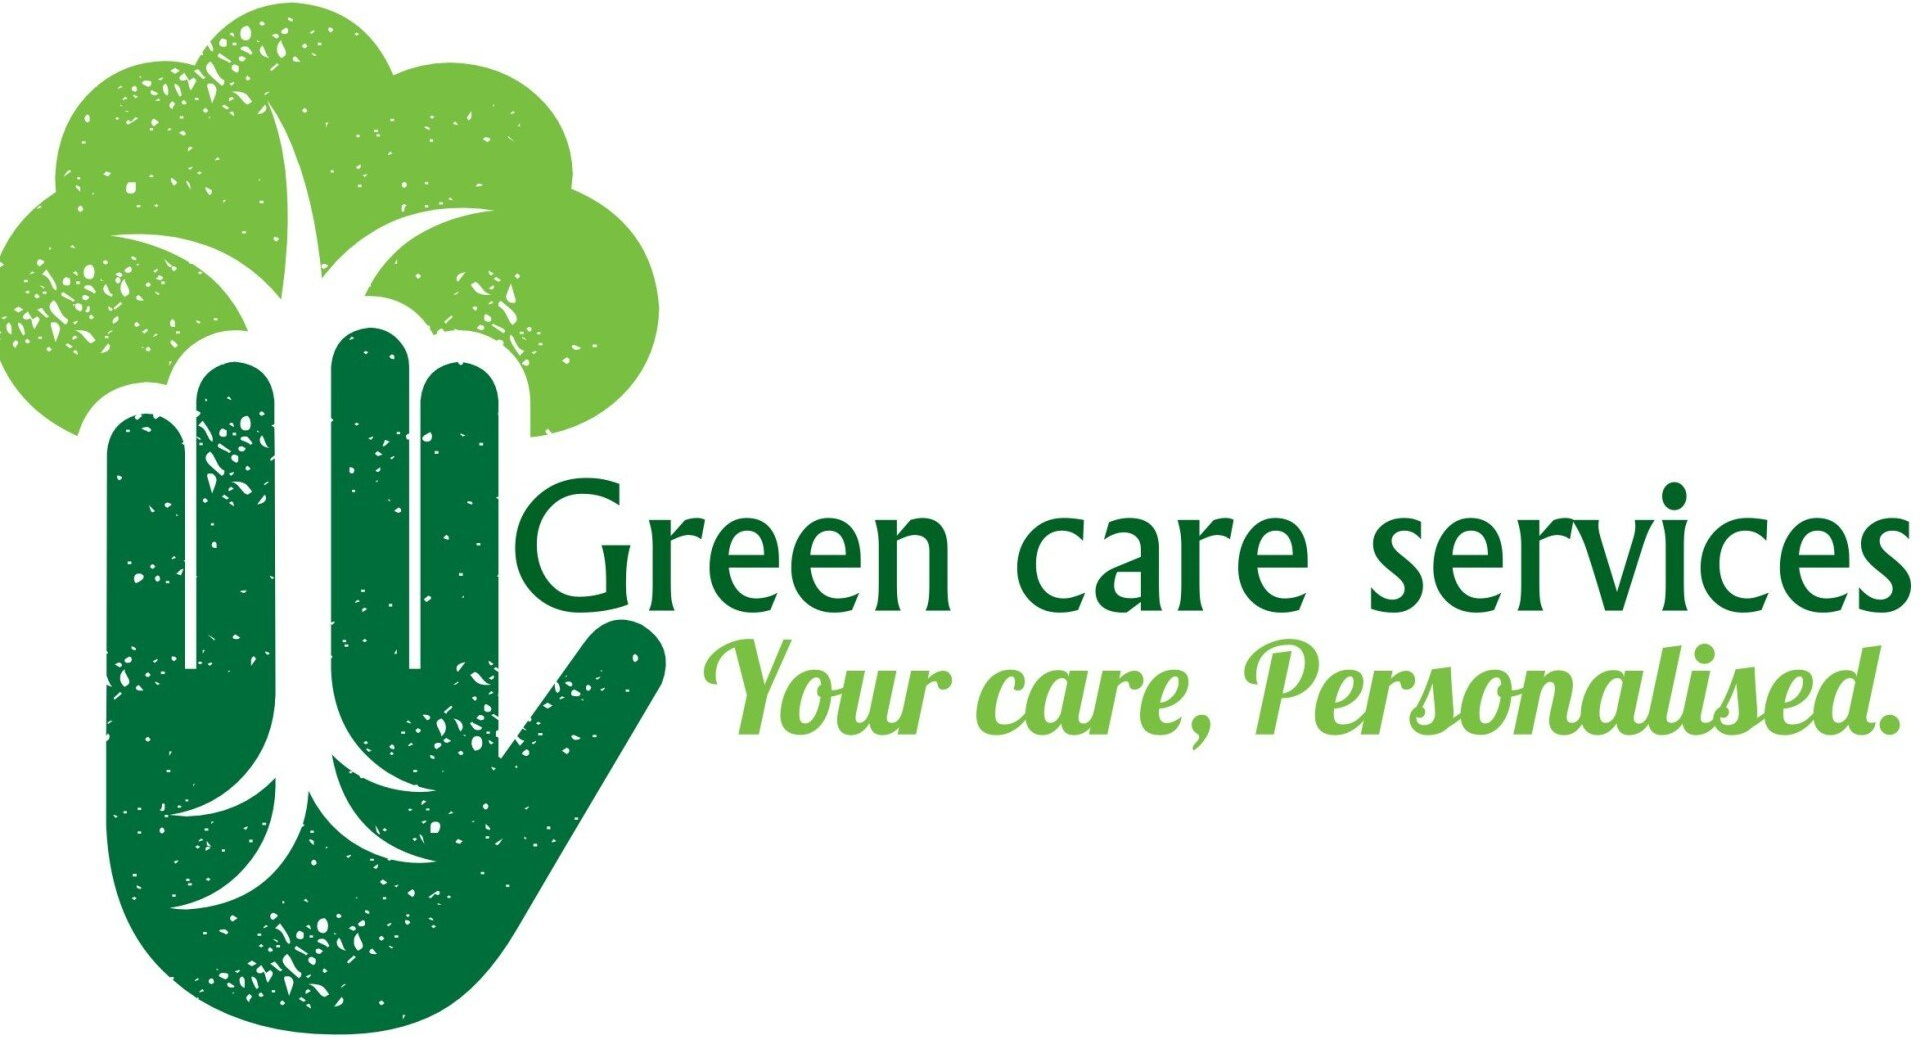 Green care services logo